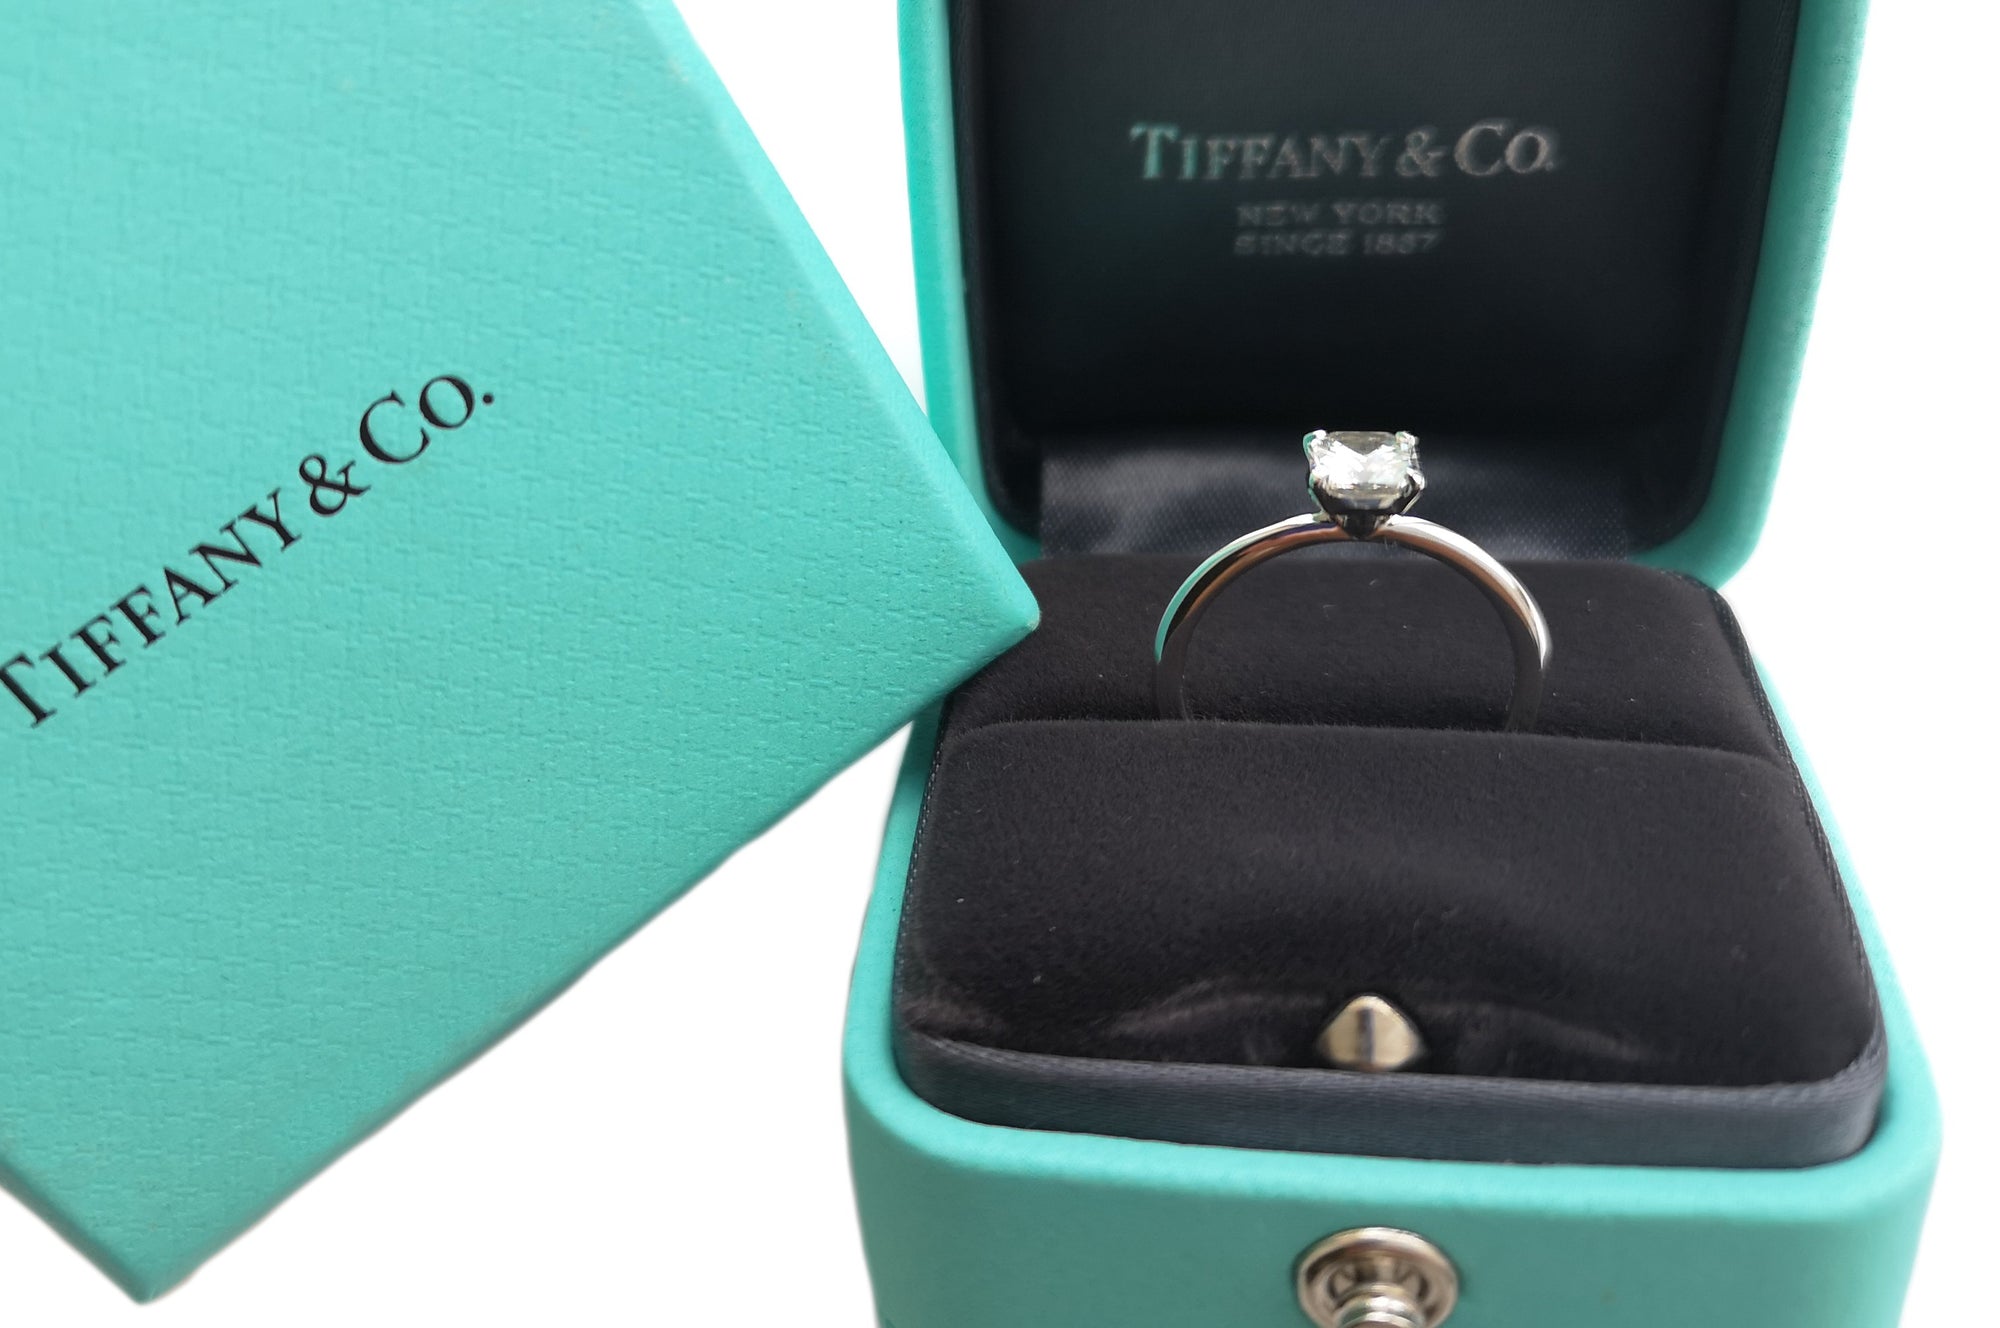 Tiffany & Co. True® 0.54ct H/VVS2 Triple XXX Diamond Engagement Ring